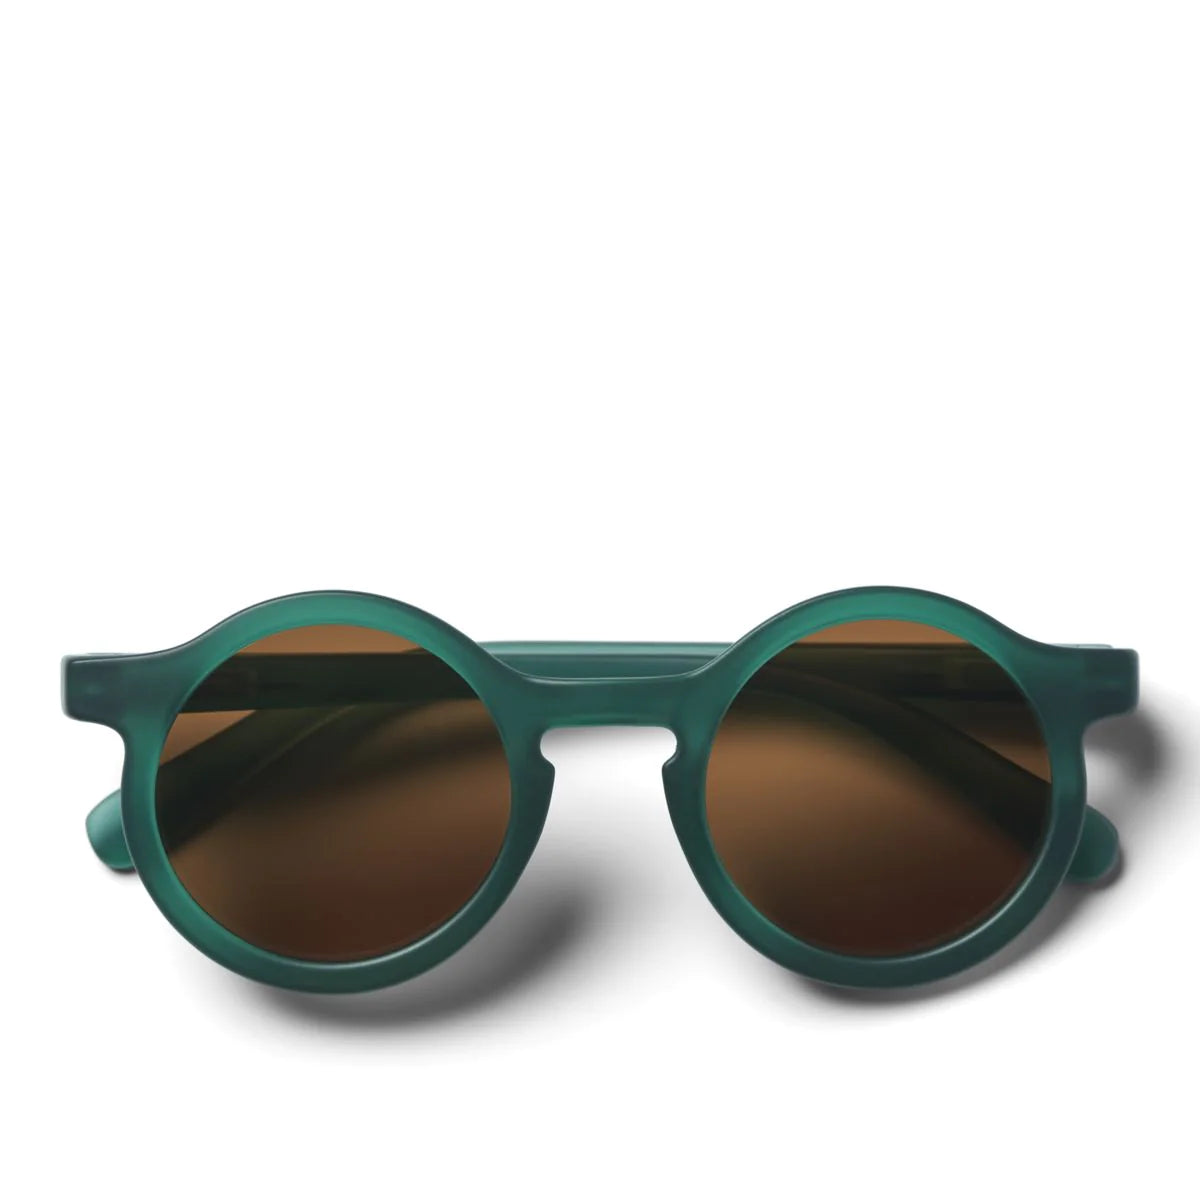 Darla Sonnenbrille "Garden Green" von Liewood, verschiedene Größen